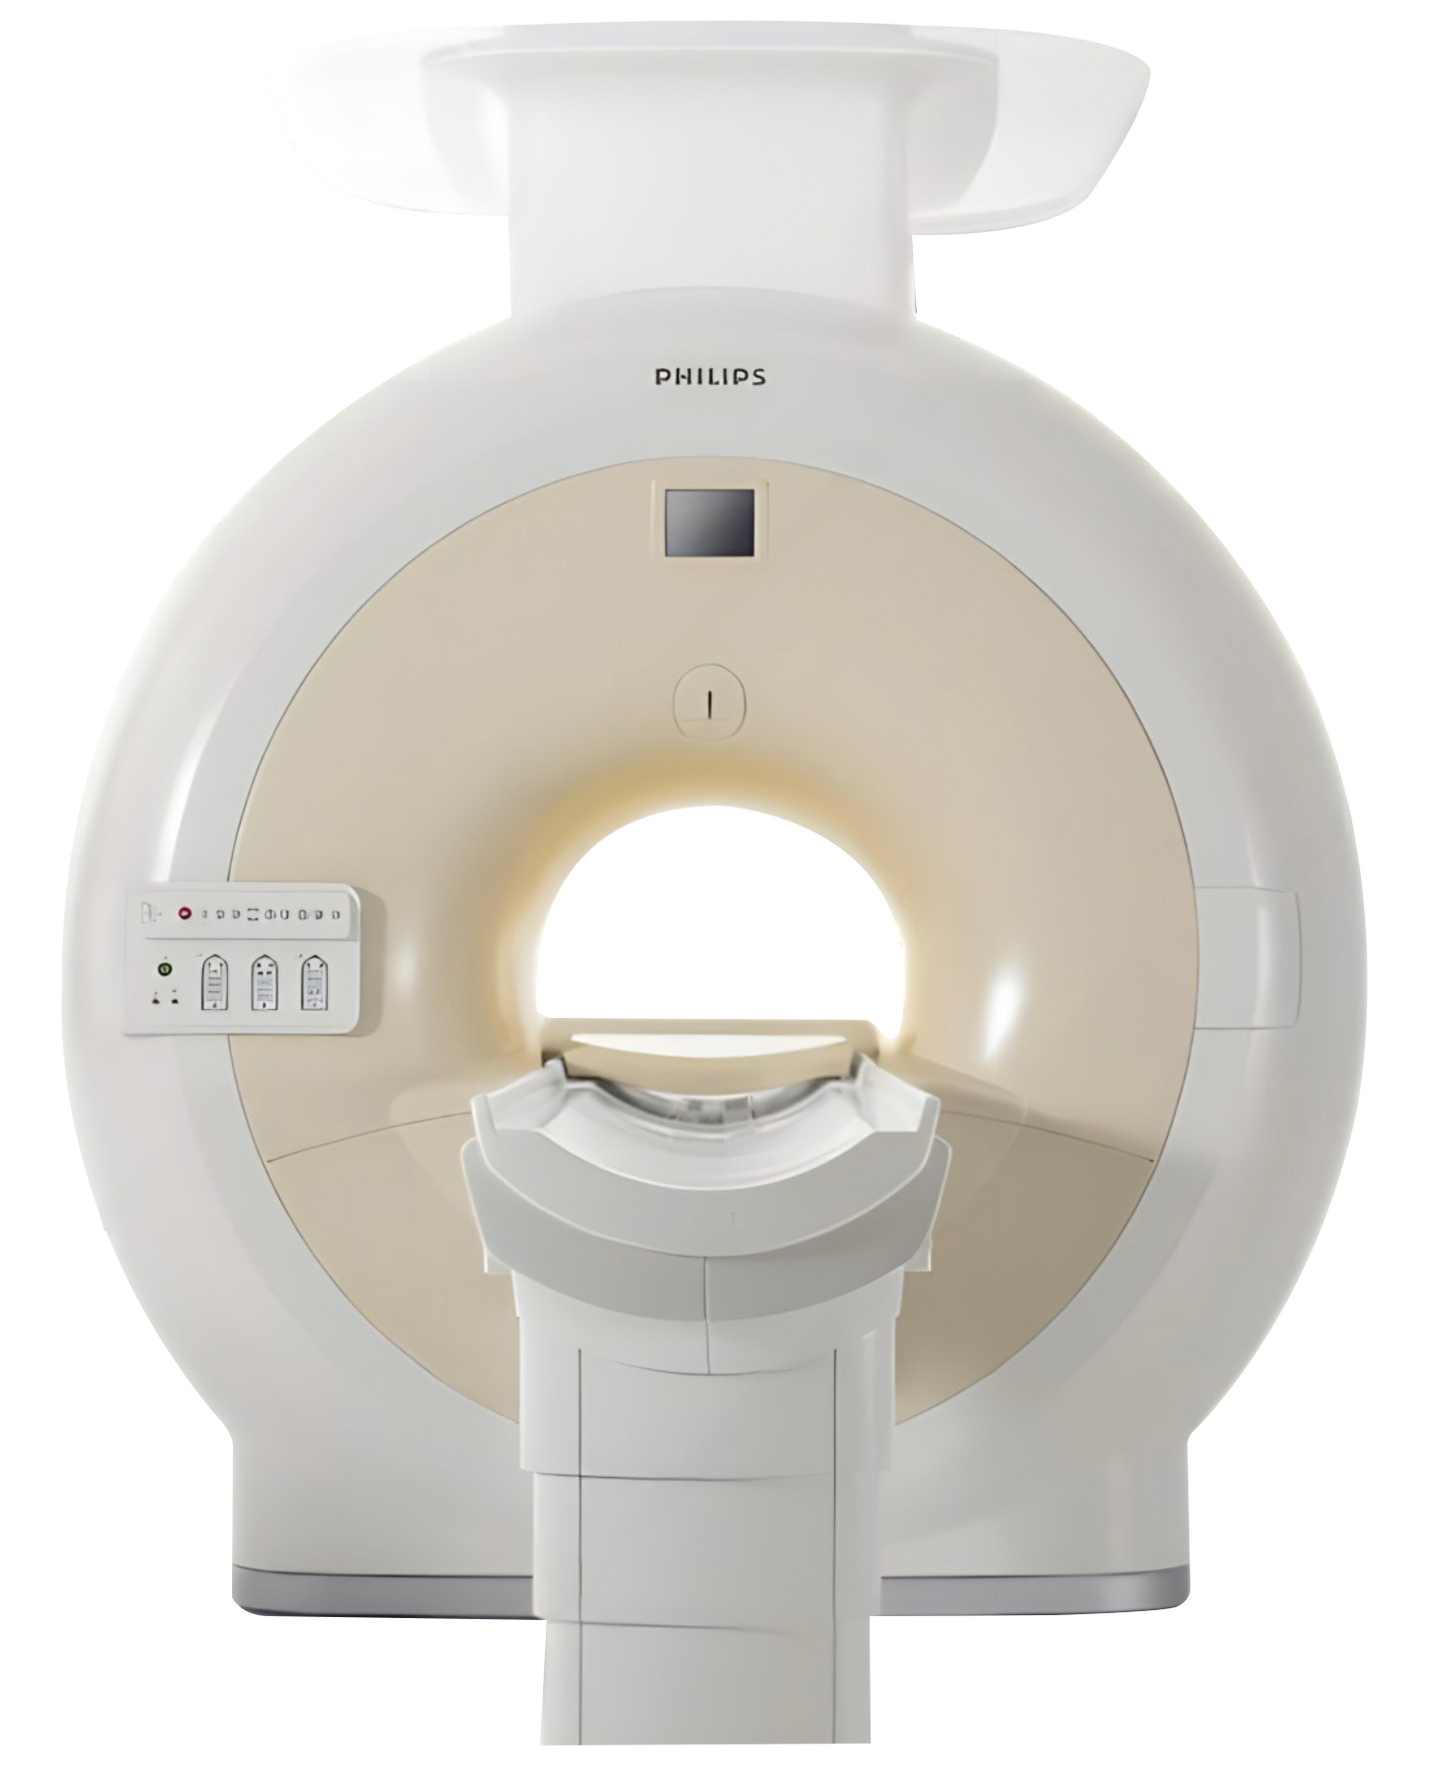 Philips Achieva 1.5T MRI System